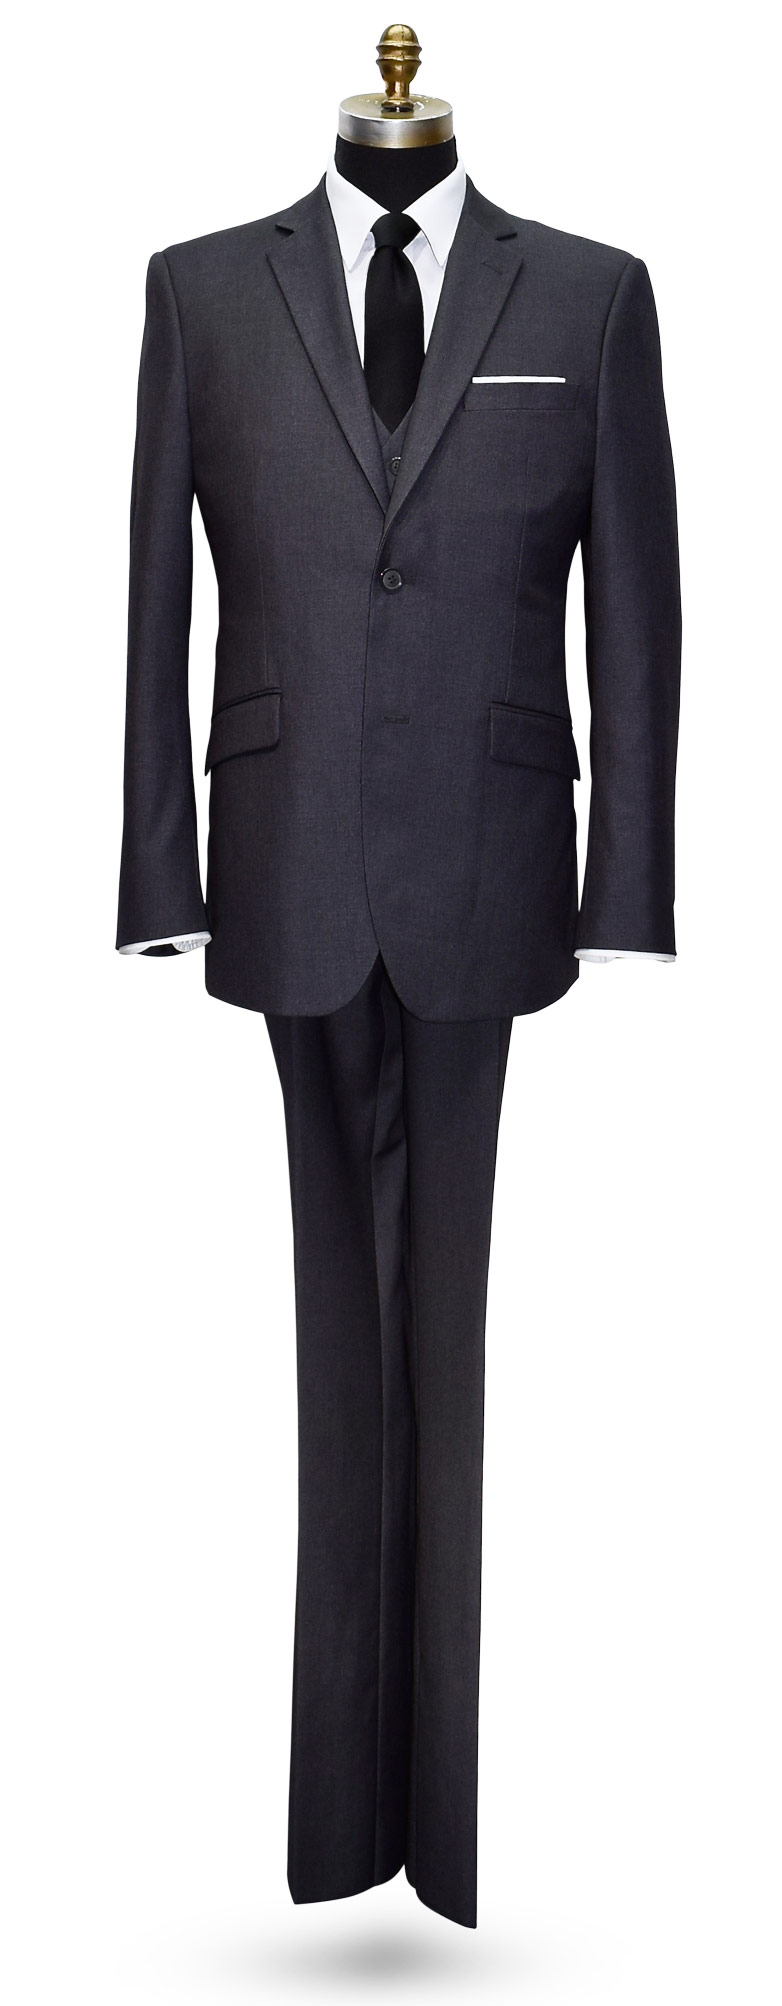 Men's Charcoal 3 Piece Slim Fit Suit-Coat, Pants and Vest Only